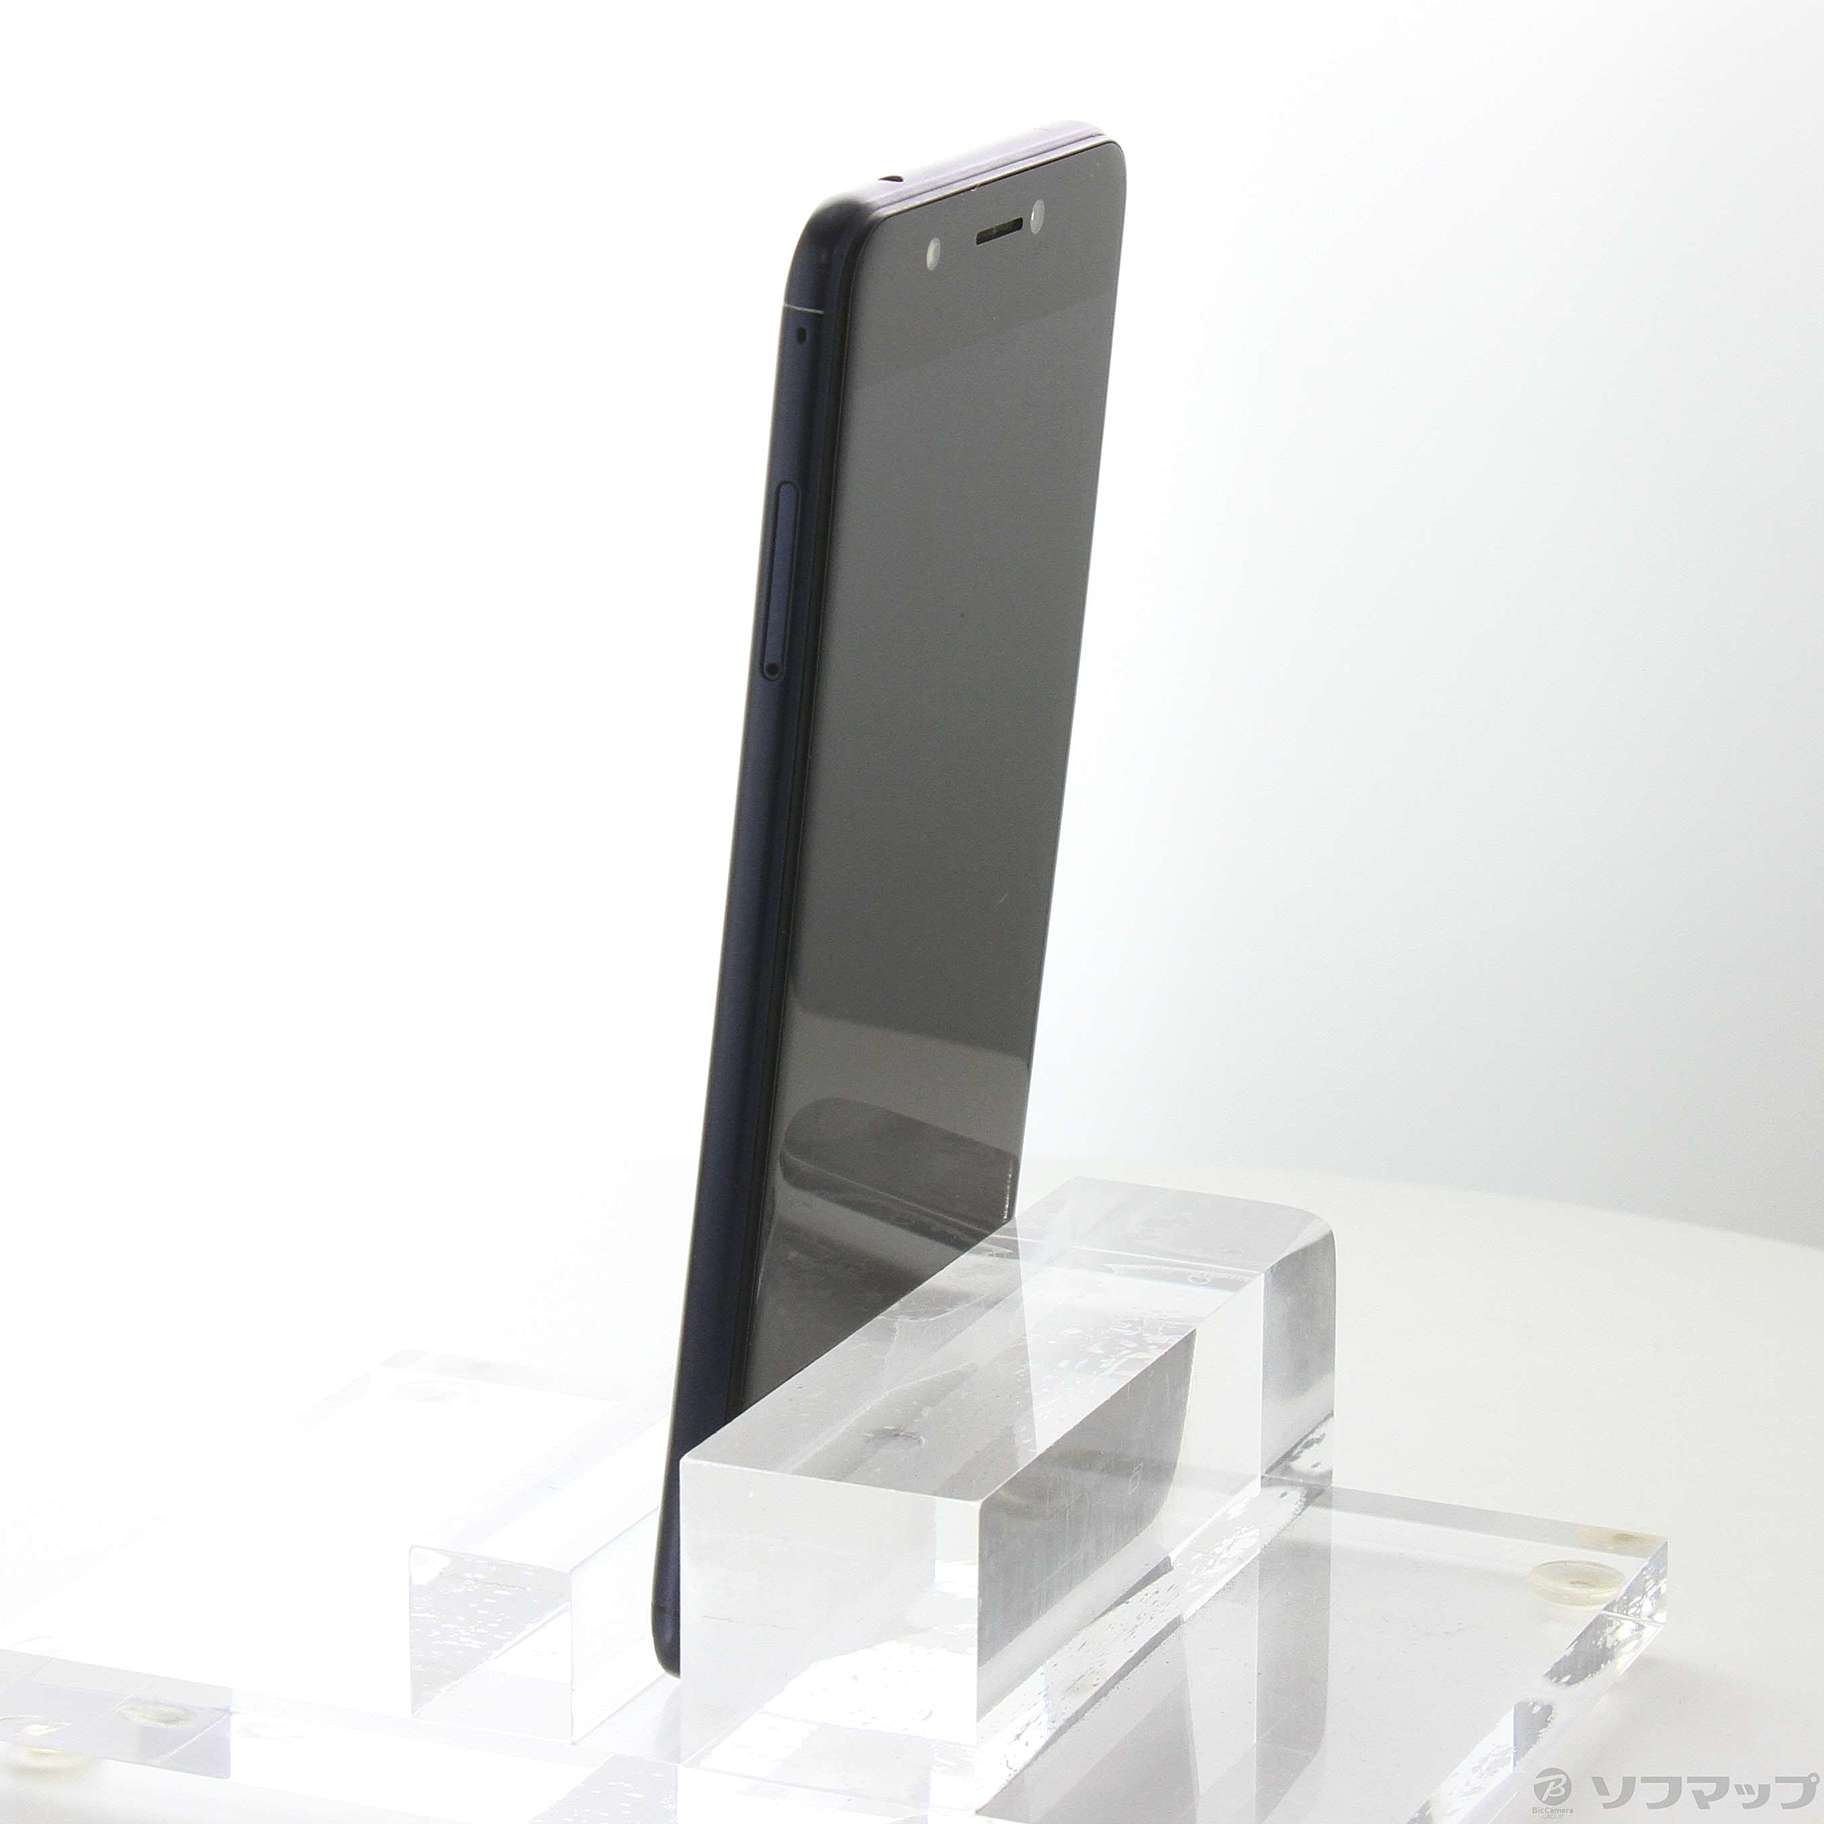 中古】ZenFone 4 Max Pro 32GB ネイビーブラック ZC554KL-BK32S4BKS ...